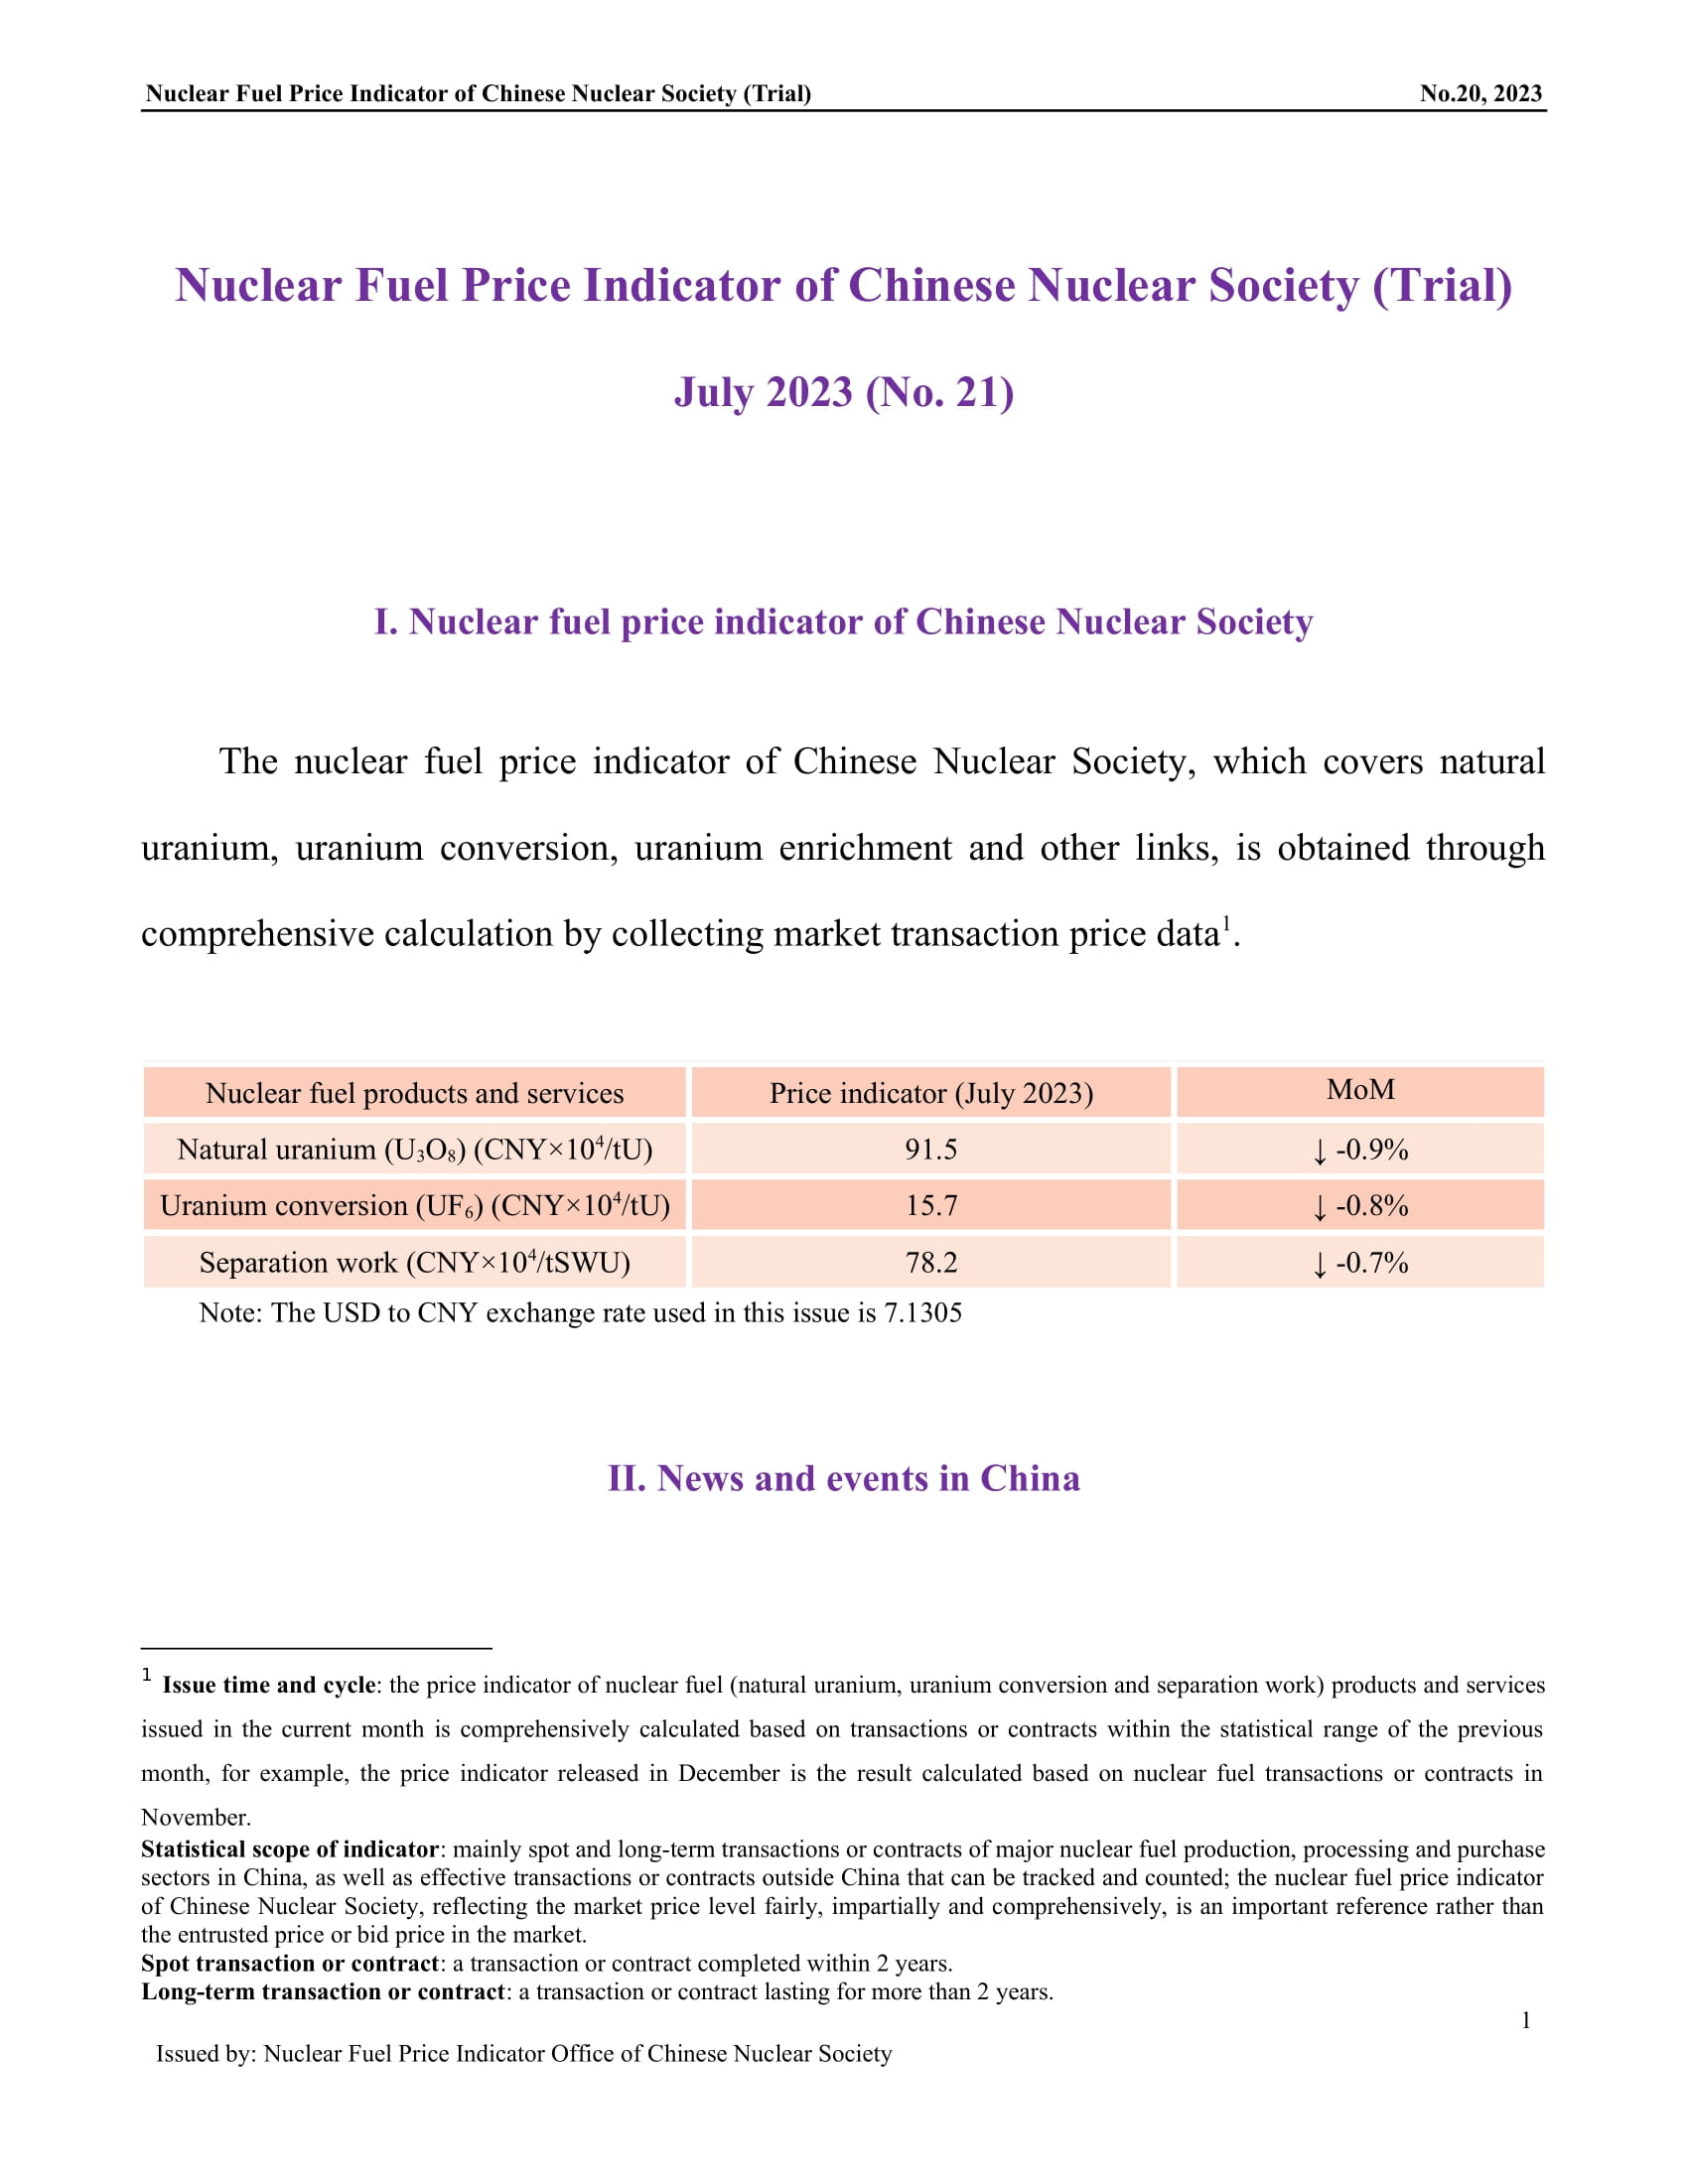 中国核学会核燃料价格指数(试运行)（2023年8月,总第21期）-终稿_EN-1.jpg